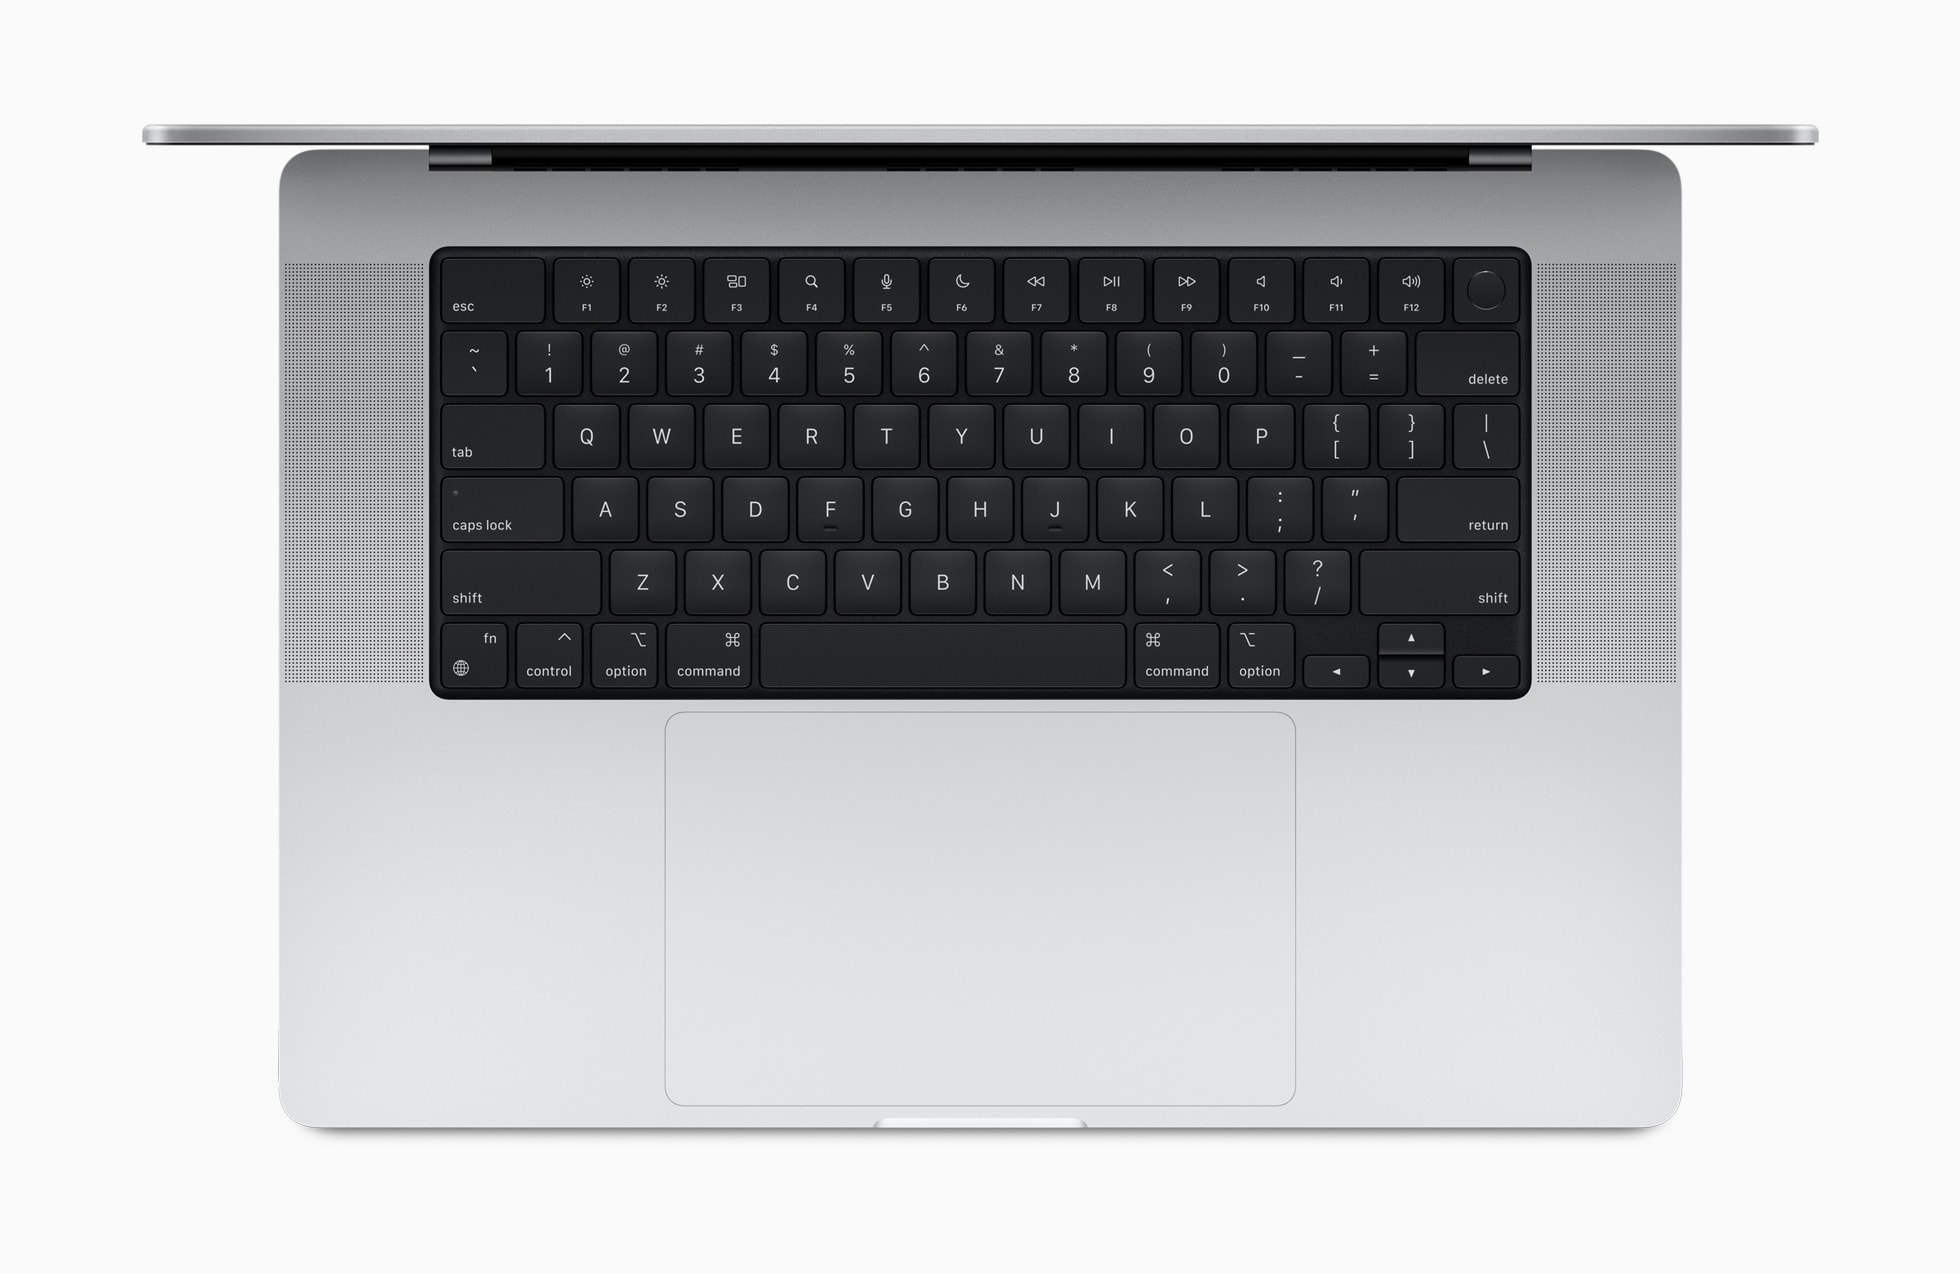 2021 MacBook Pro Magic Keyboard: The Magic Keyboard changes again